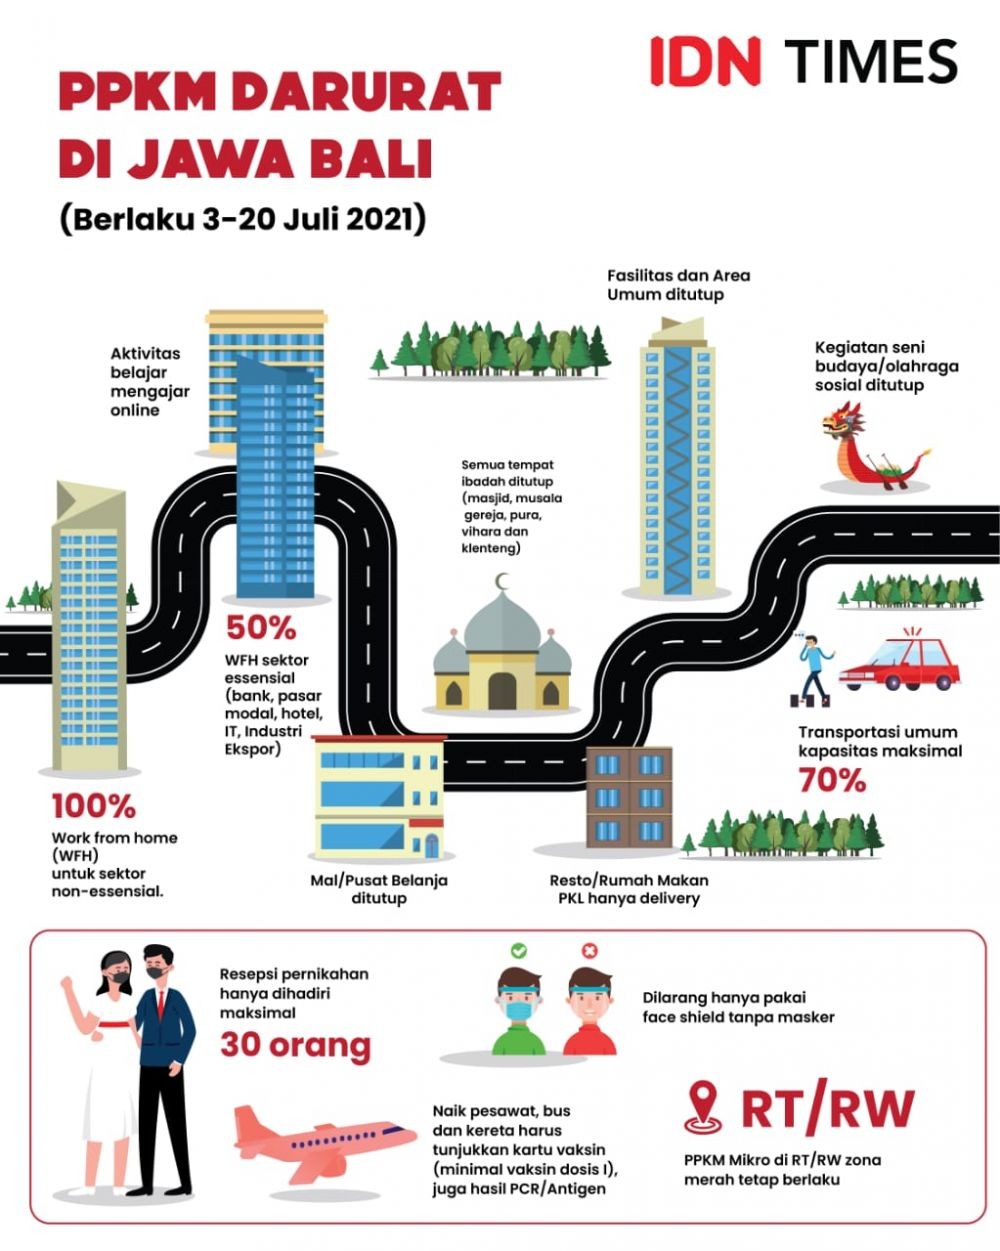 PPKM Darurat Bikin Pengusaha Kota Tangerang Pusing 